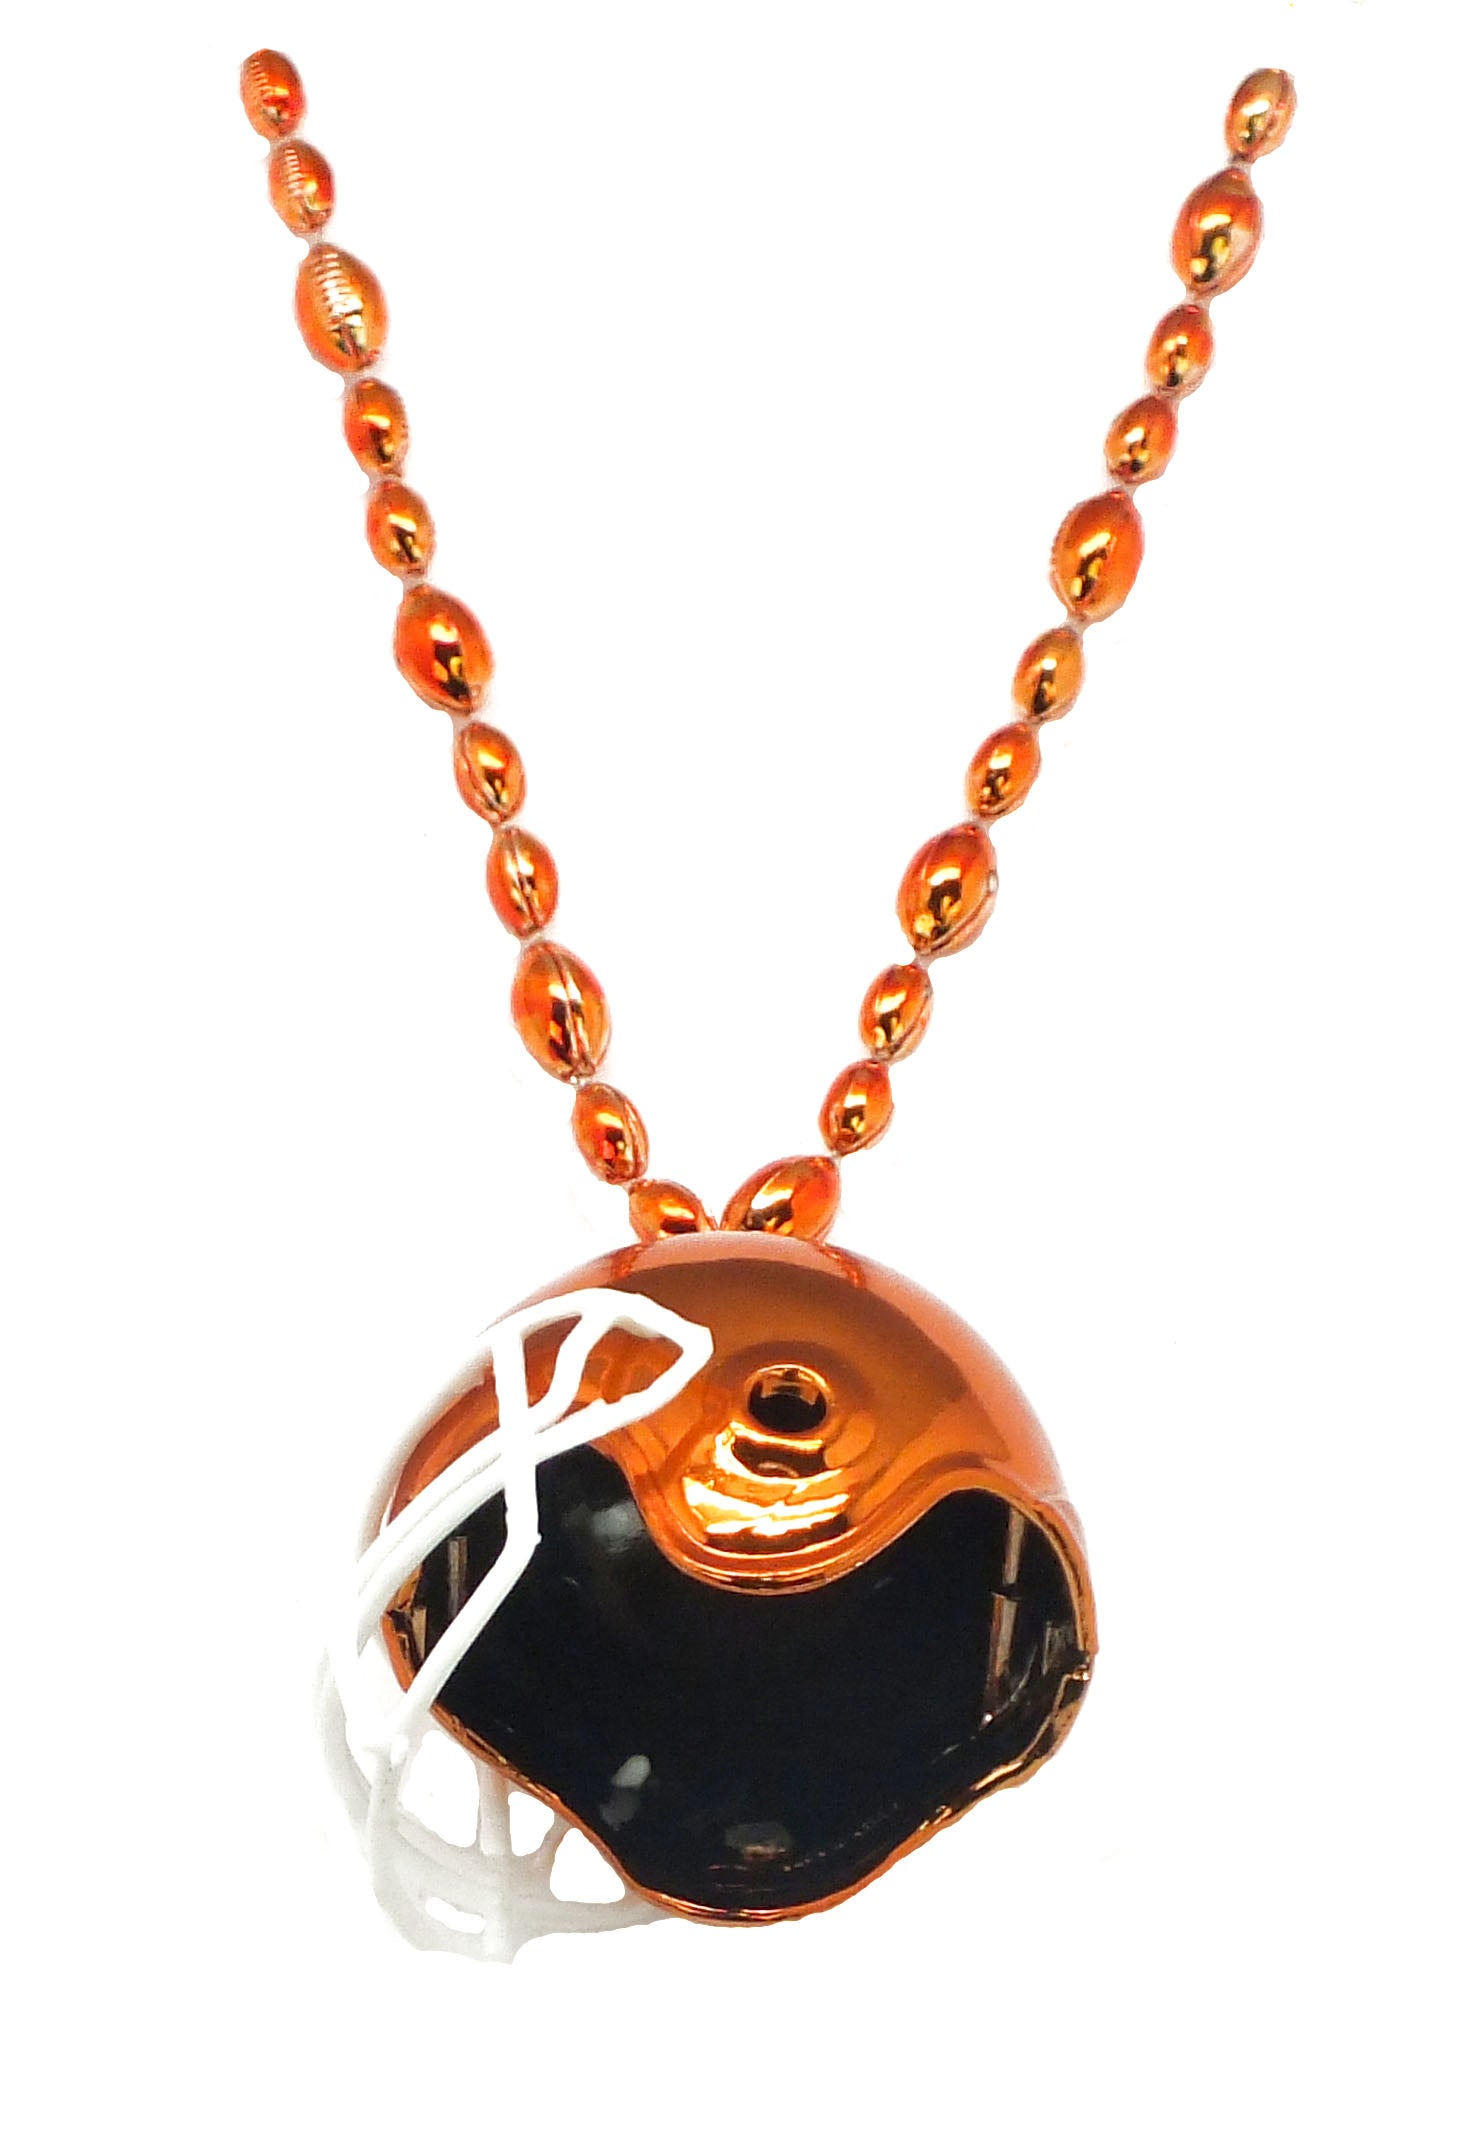 33" Orange Football Helmet Bead